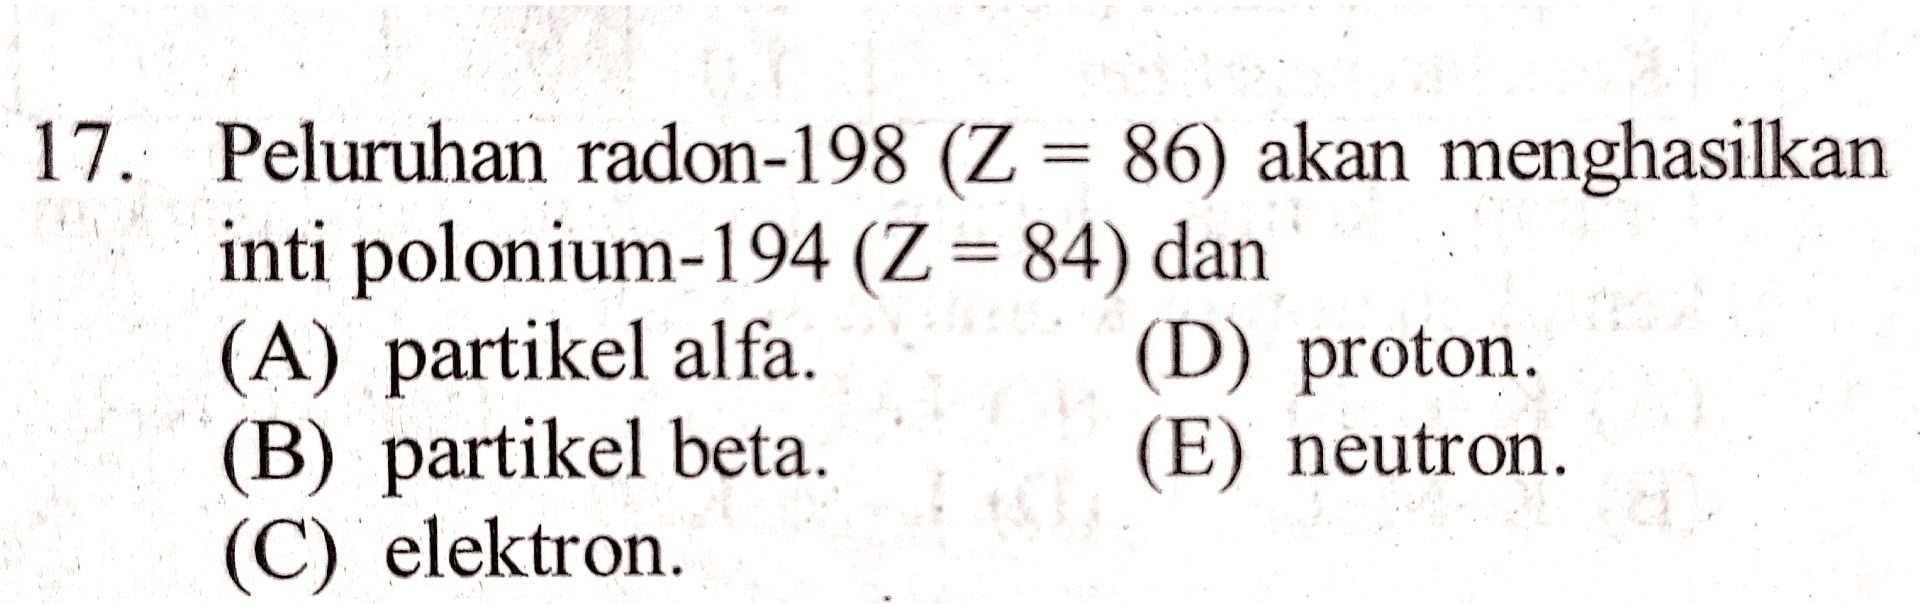 17. Peluruhan radon-198 (Z = 86) akan menghasilkan inti polonium-194 (Z = 84) dan (A) partikel alfa. (D) proton. (B) partikel beta (E) neutron. (C) elektron 